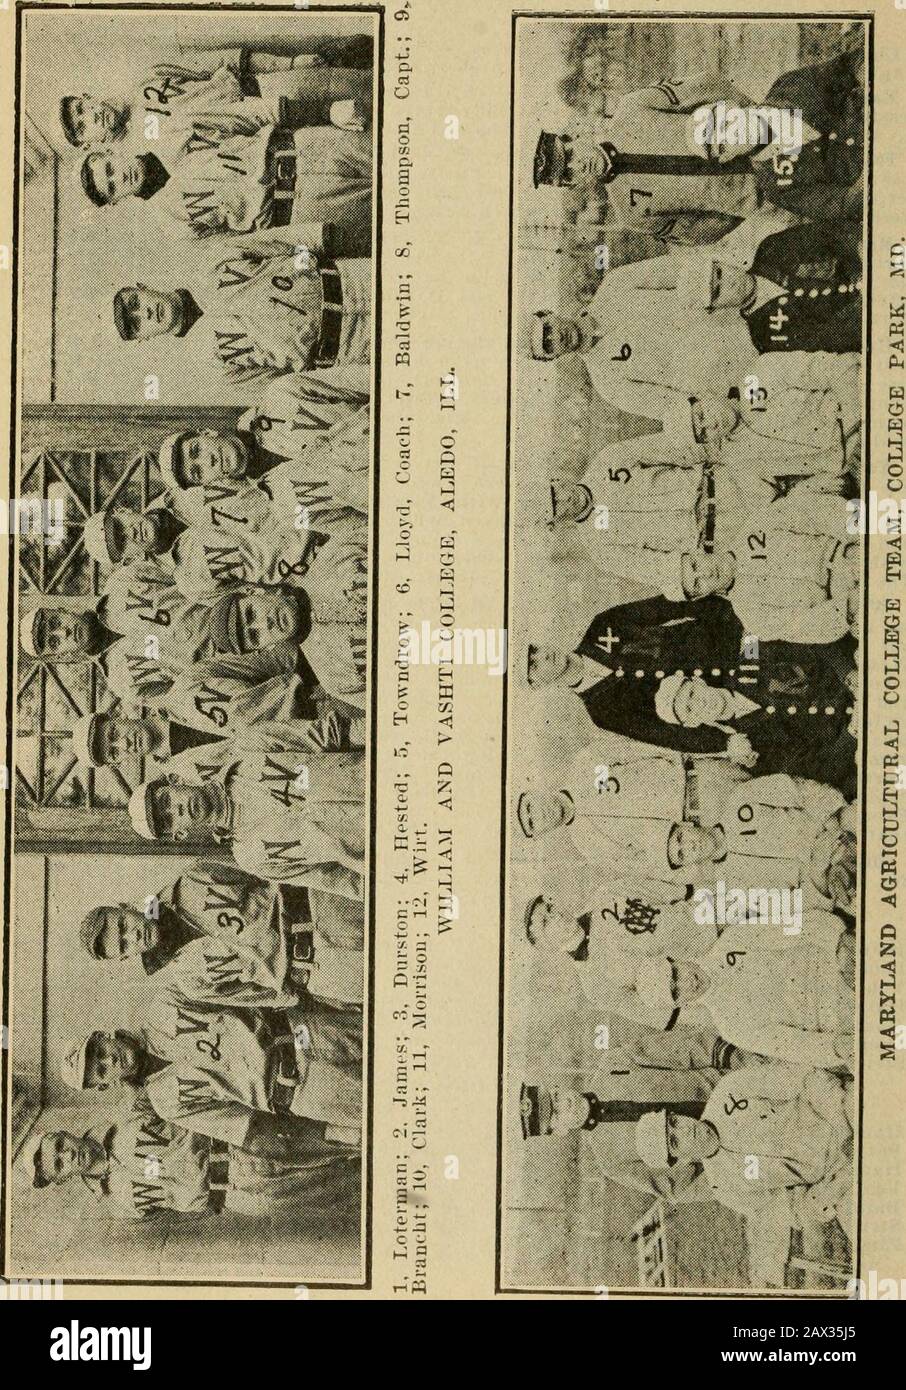 Pelota de base oficial universitaria de Spalding annual1911-. Rston, catcher; Histed. Pitcher; Tommy Thompson, segundo baseman y capitán; James, centrocampista, y Tondrow todos jugaron pelota de alta clase.Cada miembro del equipo estará de vuelta en 1913. Y las predicciones areque los usuarios de los Red y Grey serán una agregación formidable. La Universidad de Iowa.—Zlmmer y Von Lackum—fueron los principales batteriorpara el equipo de Iowas en 1912. Los promedios de la temporada son los siguientes: Batting.AB. H. PC. AB. H. PC. Baird 14 5 .358 Zimmer 25 4 .100 Loudin .33 11 .333 Curry 36 5 .138 Von Lackum 35 11 .314 Berry 40 5 .125 Han Foto de stock